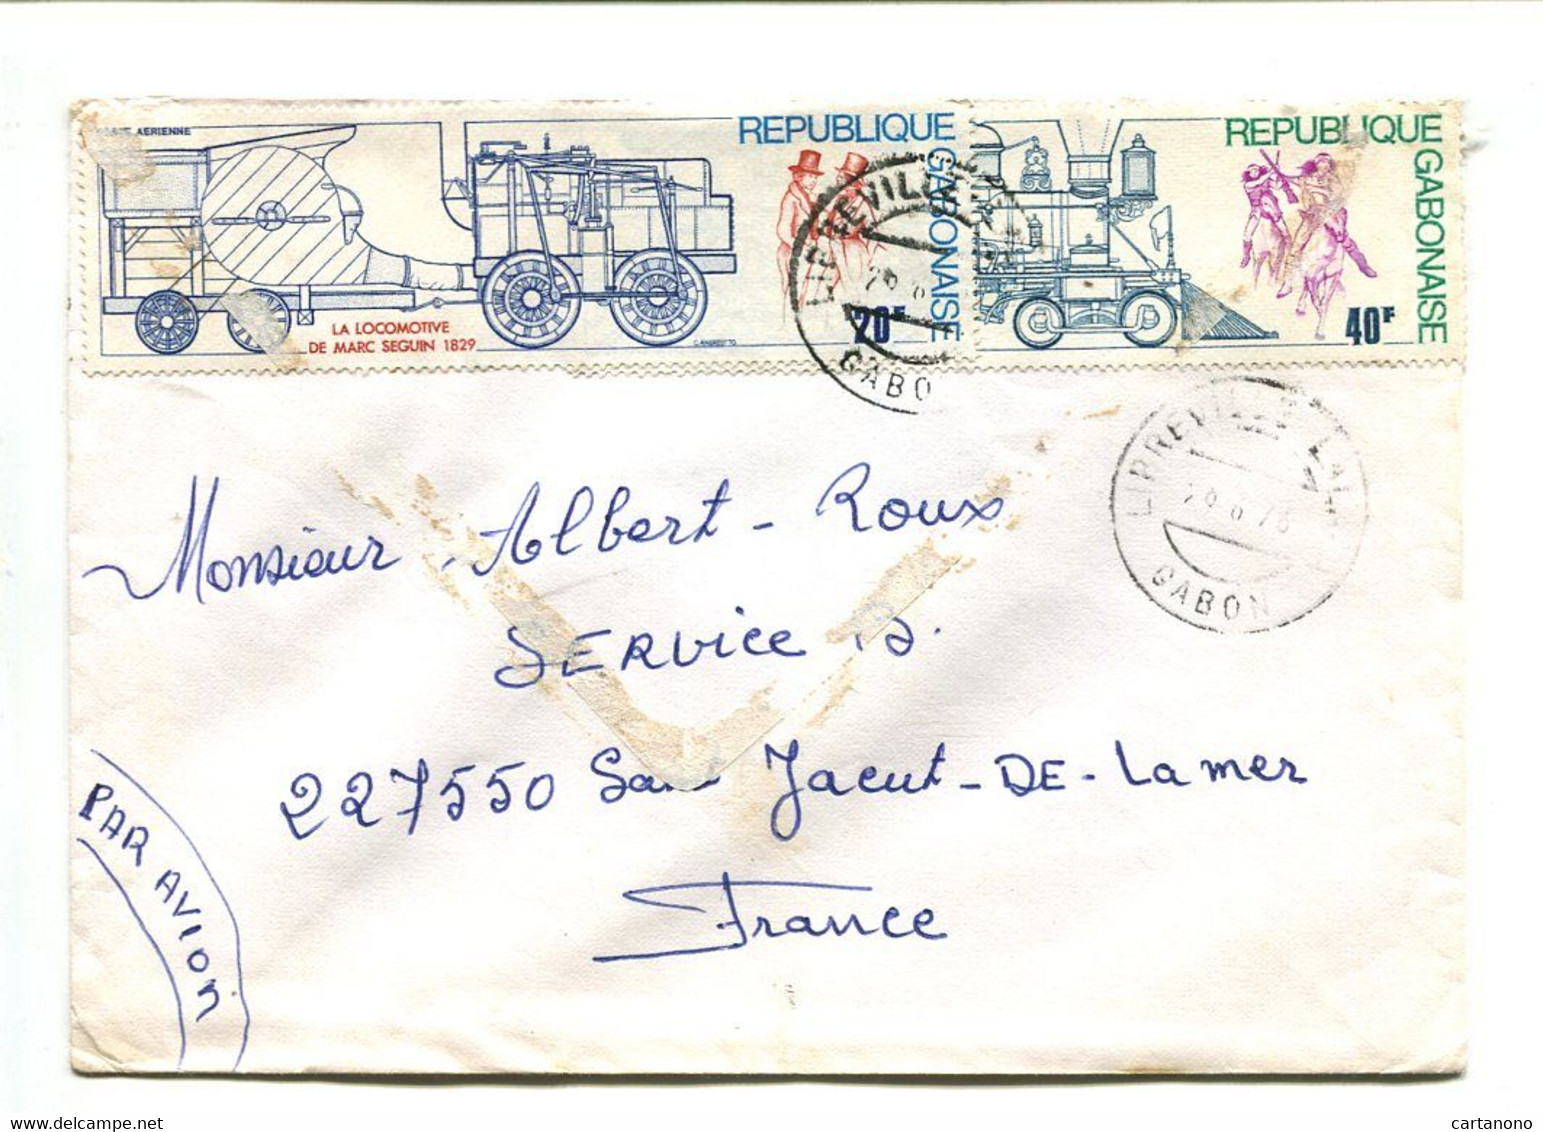 GABON Libreville1978 - Affranchissement Sur Lettre Par Avion -  Train Locomotive - Gabon (1960-...)